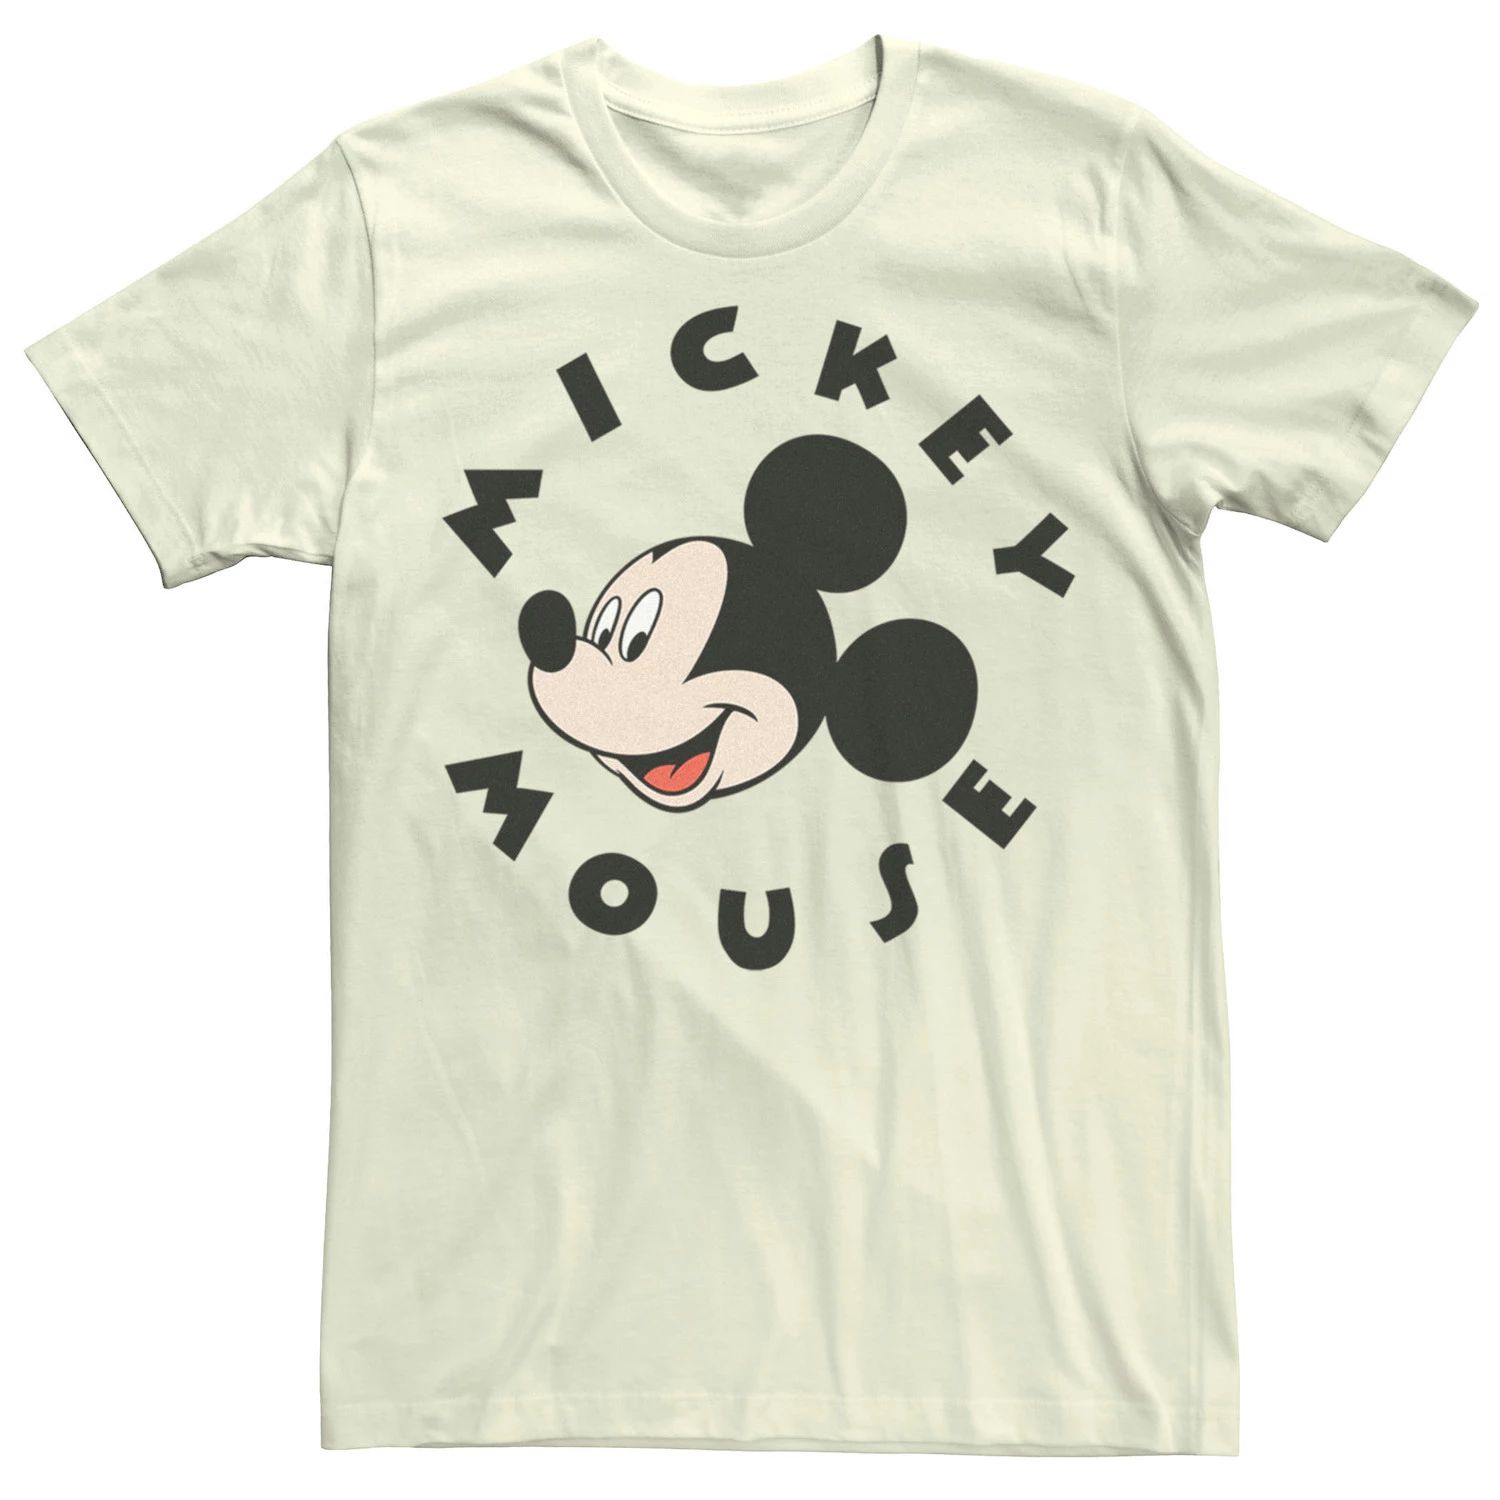 Мужская футболка только с Микки Маусом Disney Licensed Character футболка с надписью я спросил с предложением помолвки с микки маусом от disney licensed character